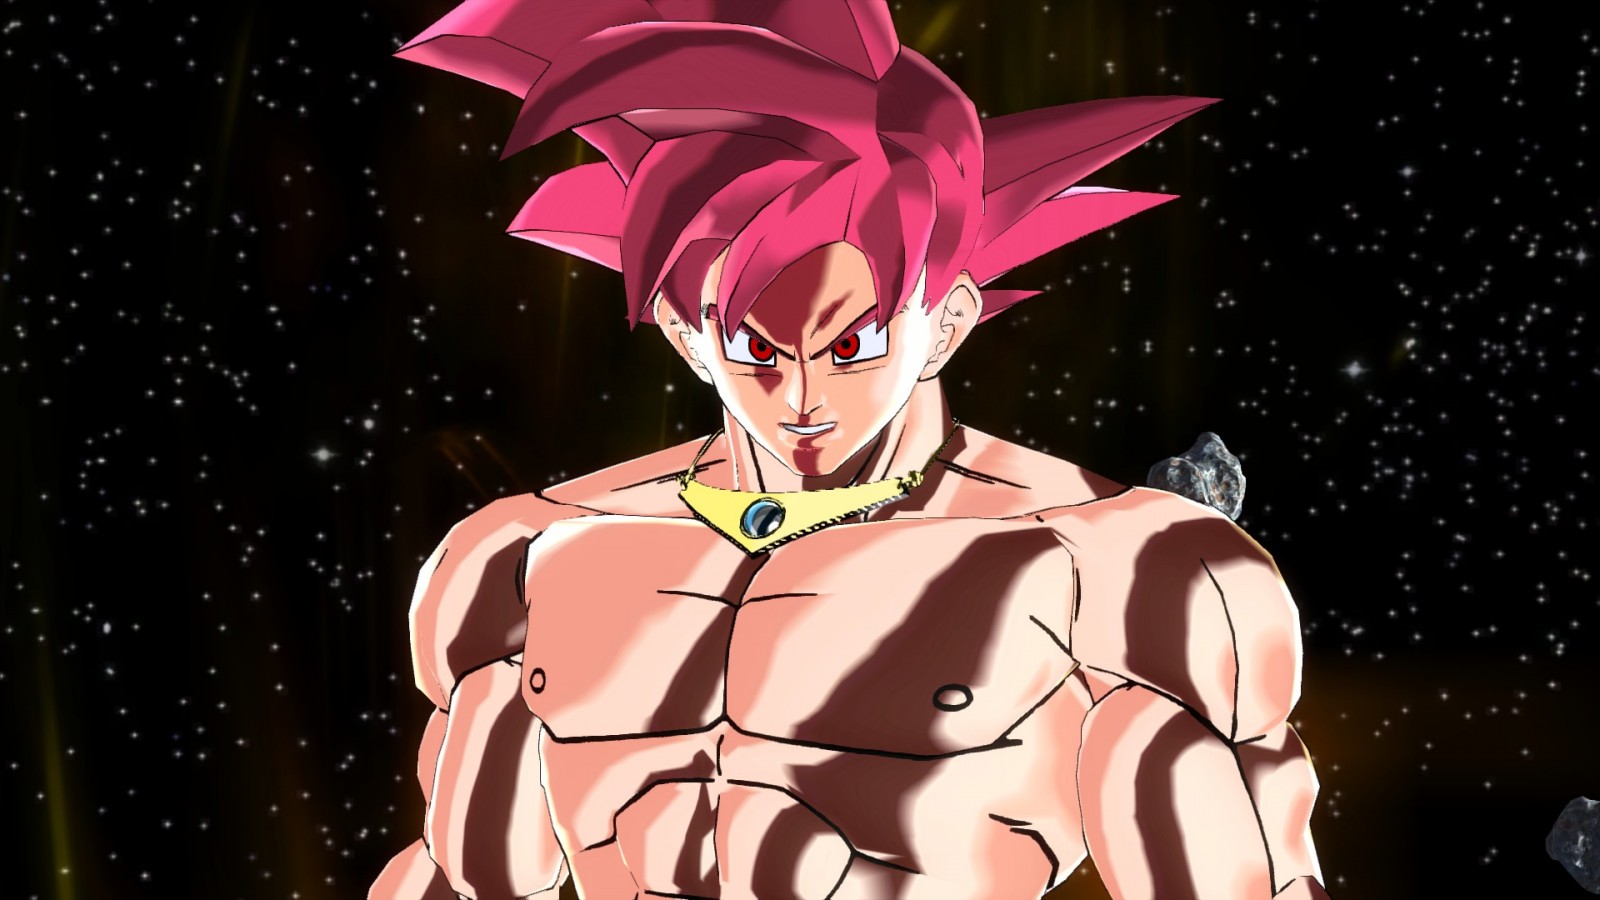 God Goku Broly outfit